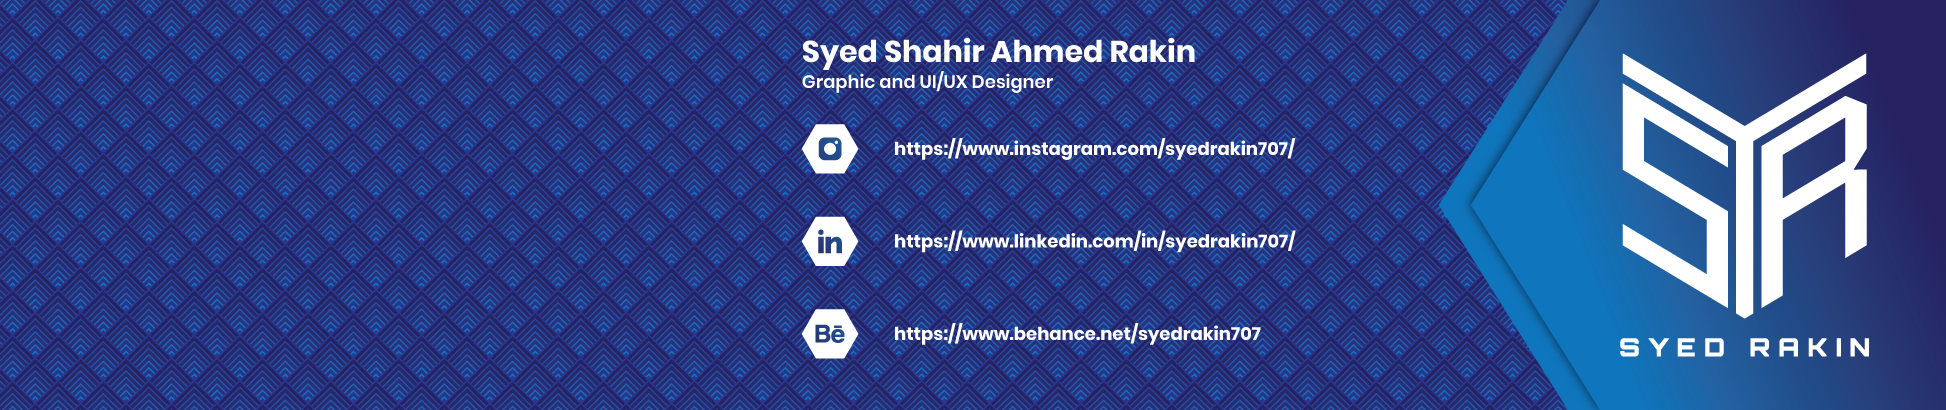 Banner de perfil de Syed Shahir Ahmed Rakin